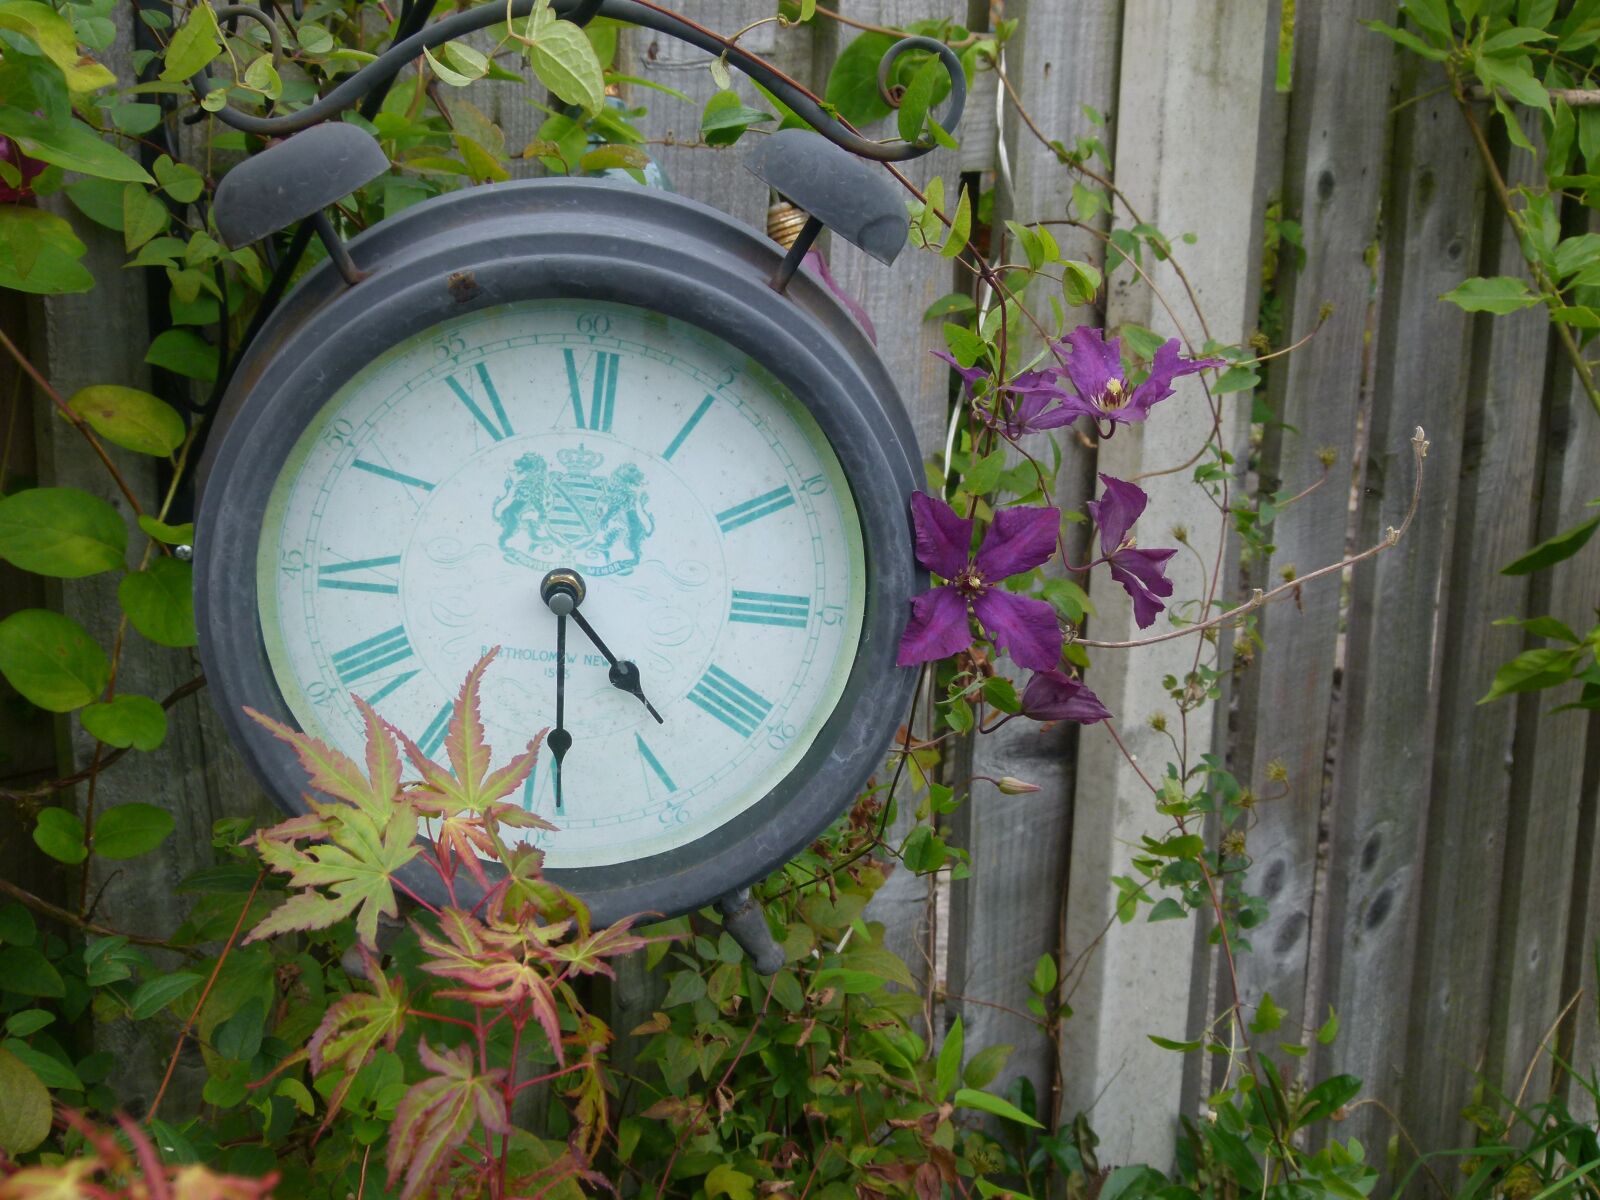 Panasonic Lumix DMC-FZ100 sample photo. Time, clock, garden photography